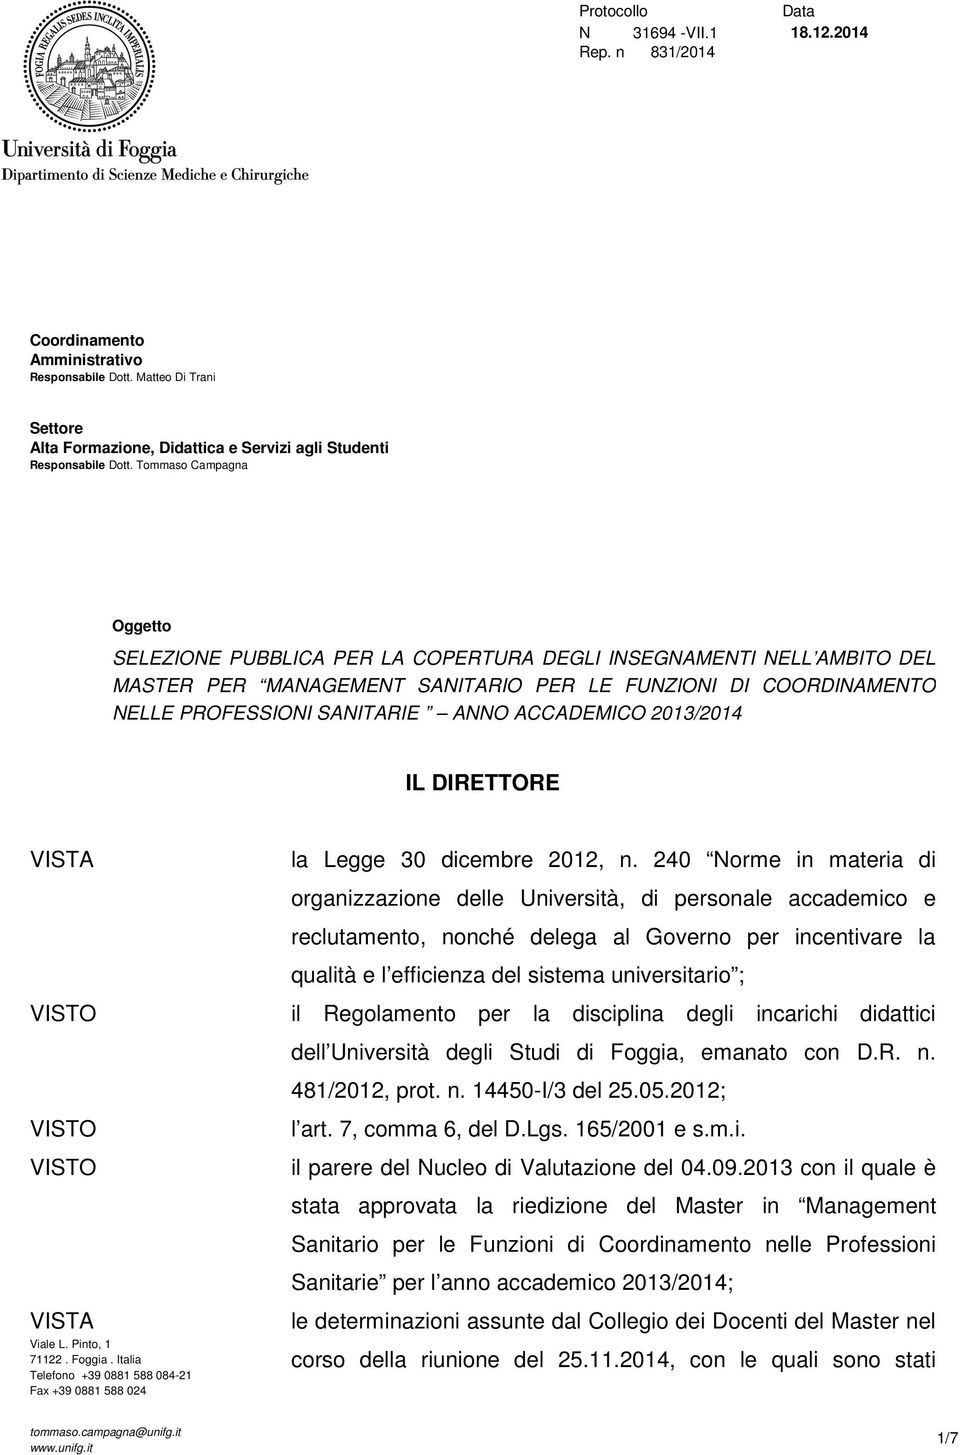 ACCADEMICO 2013/2014 IL DIRETTORE VISTA VISTA Viale L. Pinto, 1 71122. Foggia. Italia Telefono +39 0881 588 084-21 Fax +39 0881 588 024 la Legge 30 dicembre 2012, n.